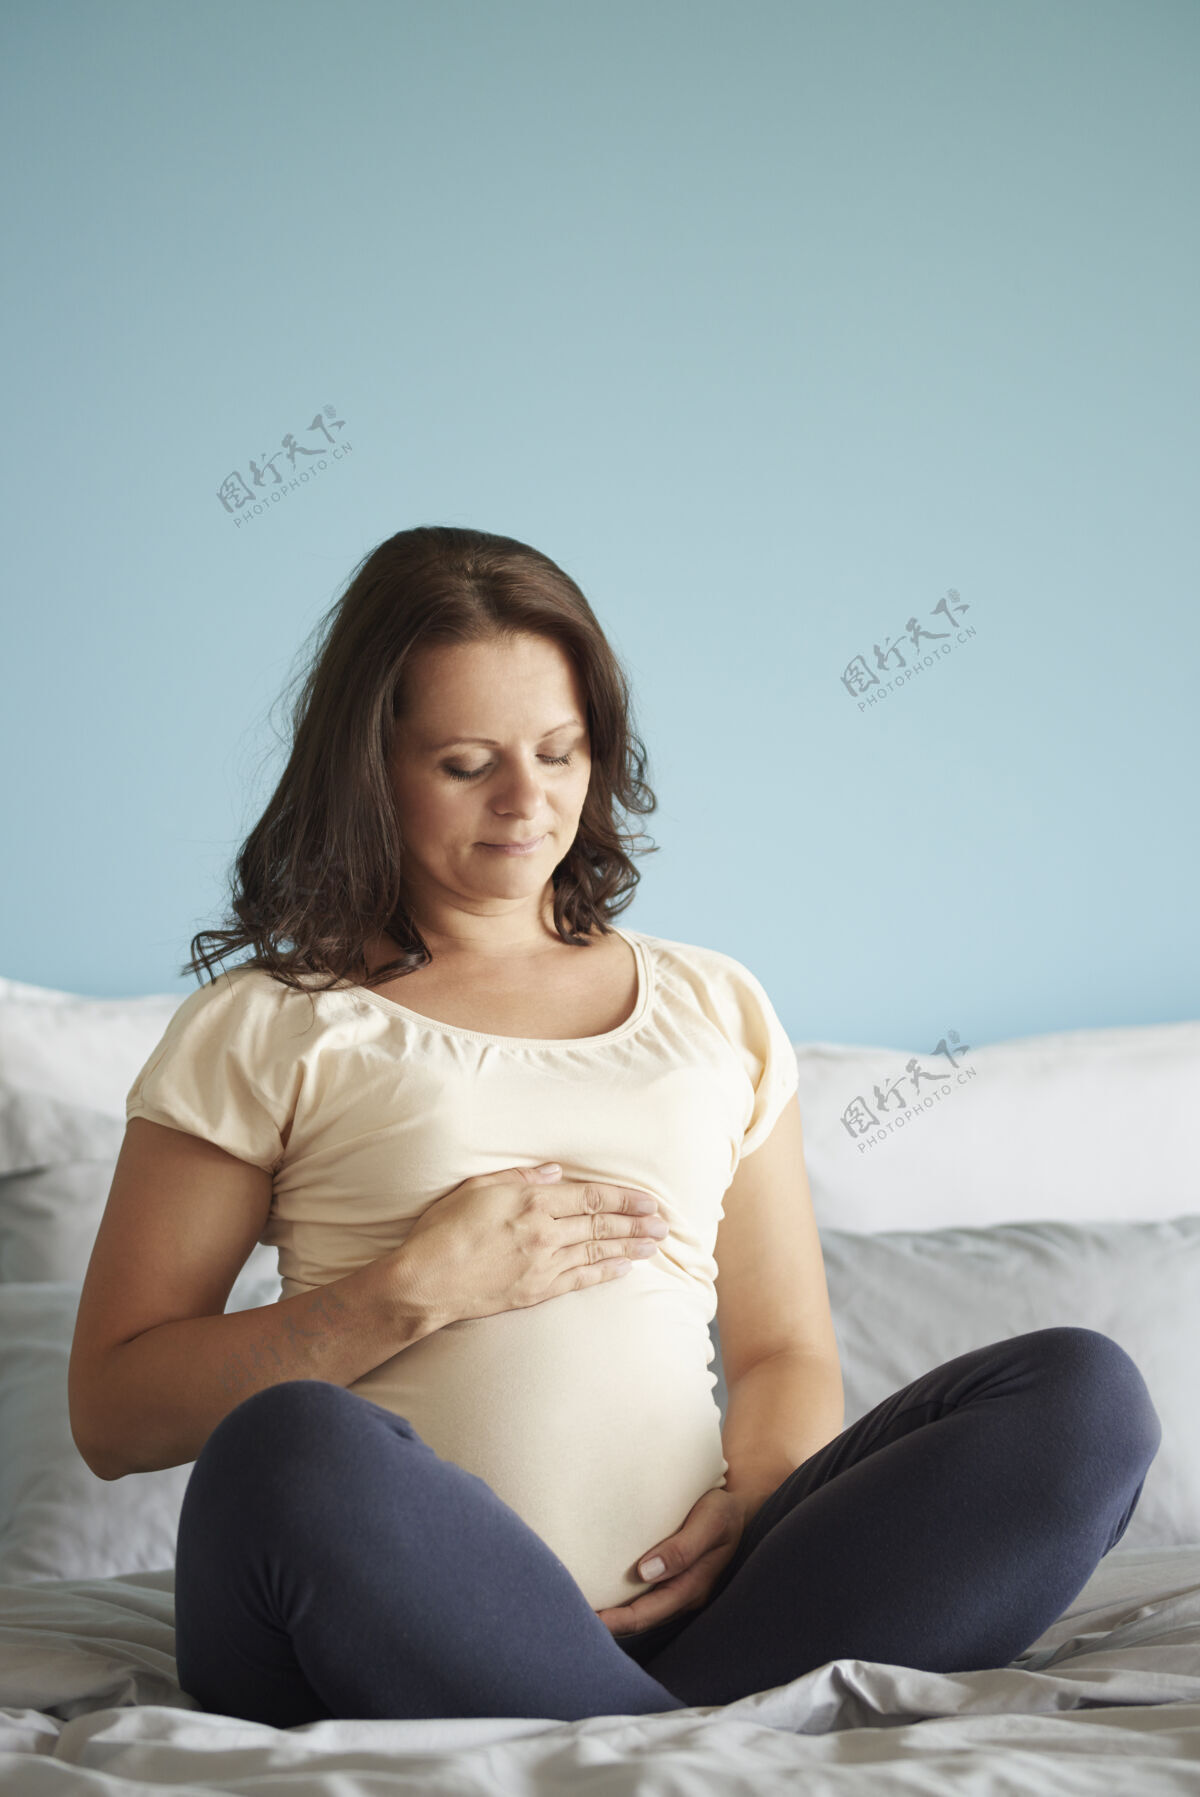 后代盘腿坐在床上的未来母亲怀孕中风期望